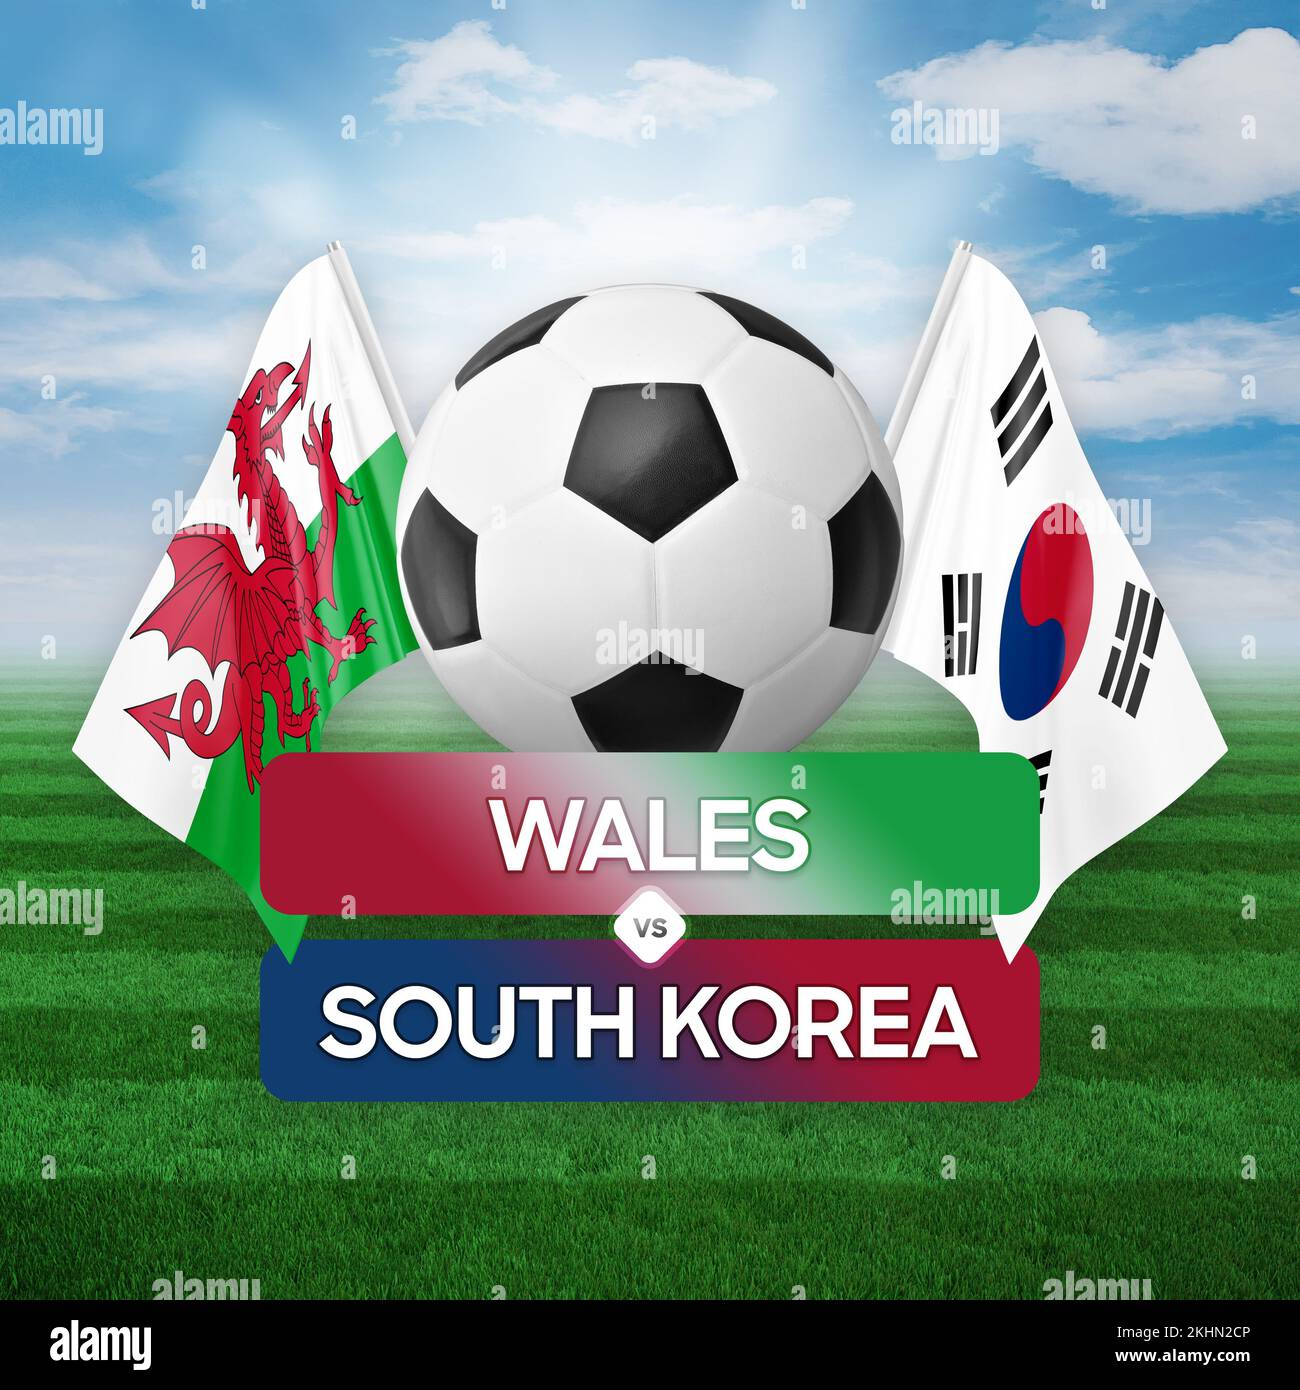 Gales vs corea del sur